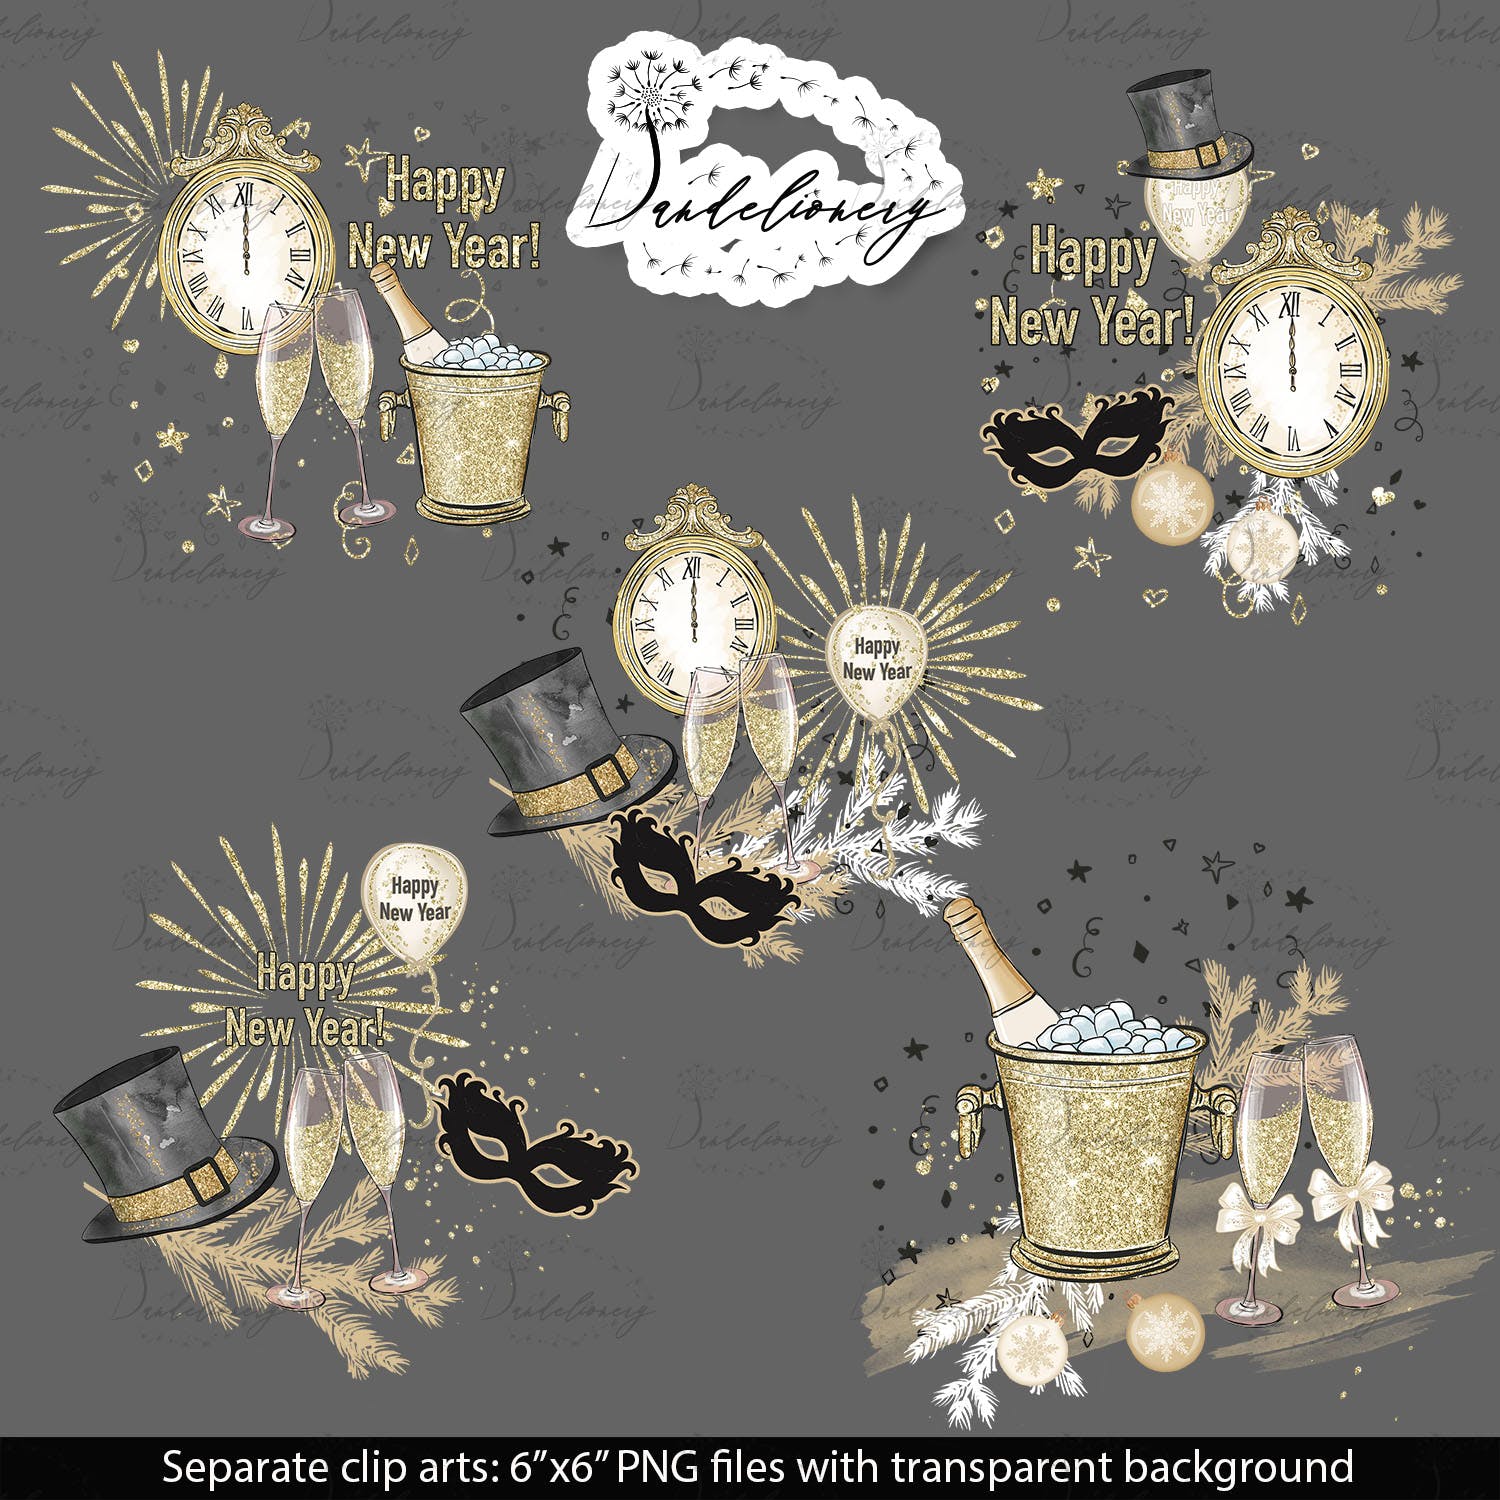 派对时光主题水彩手绘图案第一素材精选设计素材 Party Time design插图(4)